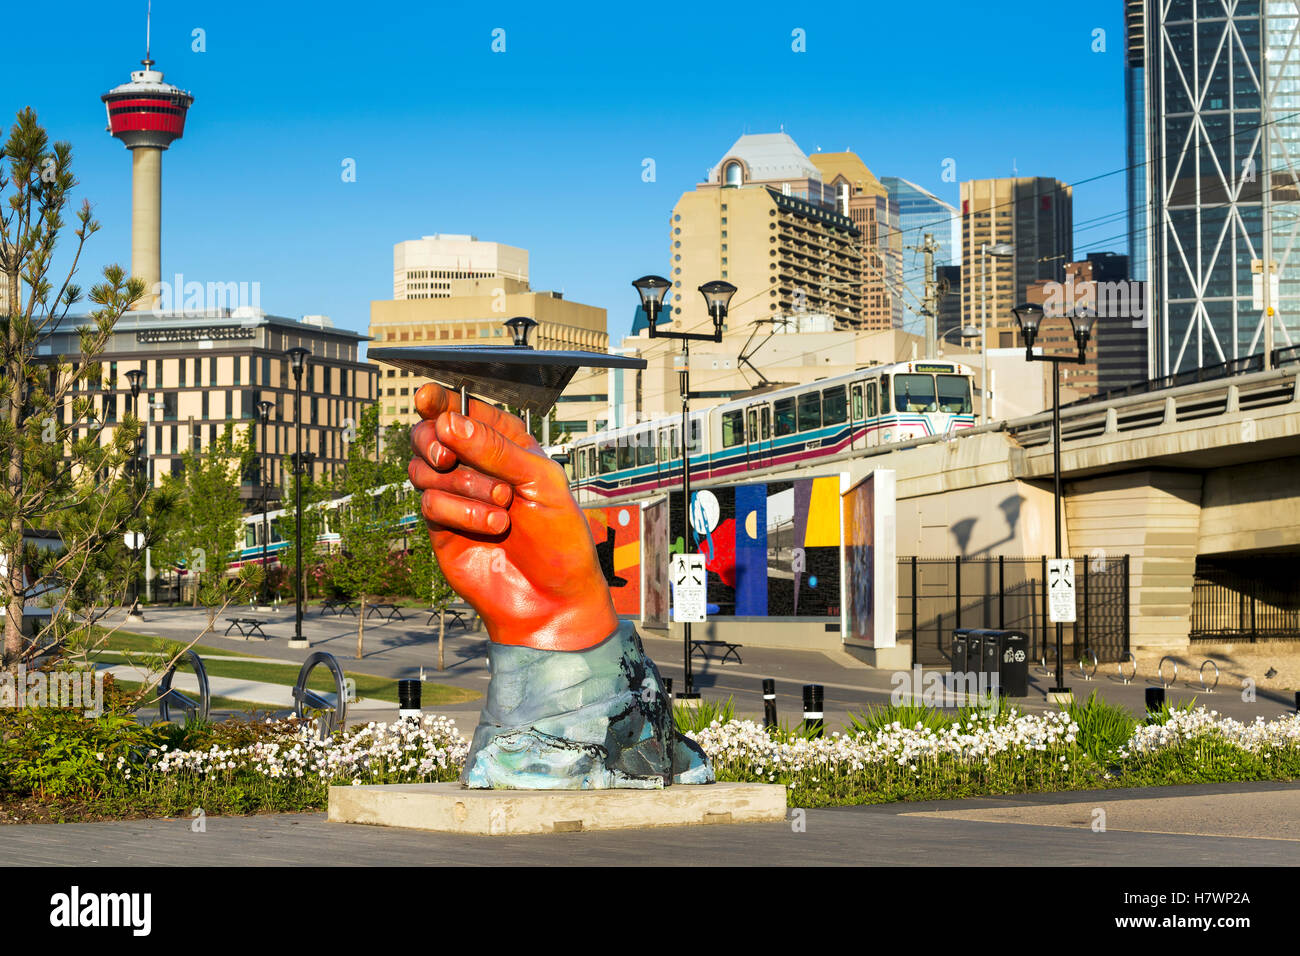 Grande scultura a mano tenendo un metallo (carta) piano, con treni pendolari, città edifici e la Torre di Calgary in background con cielo blu Foto Stock